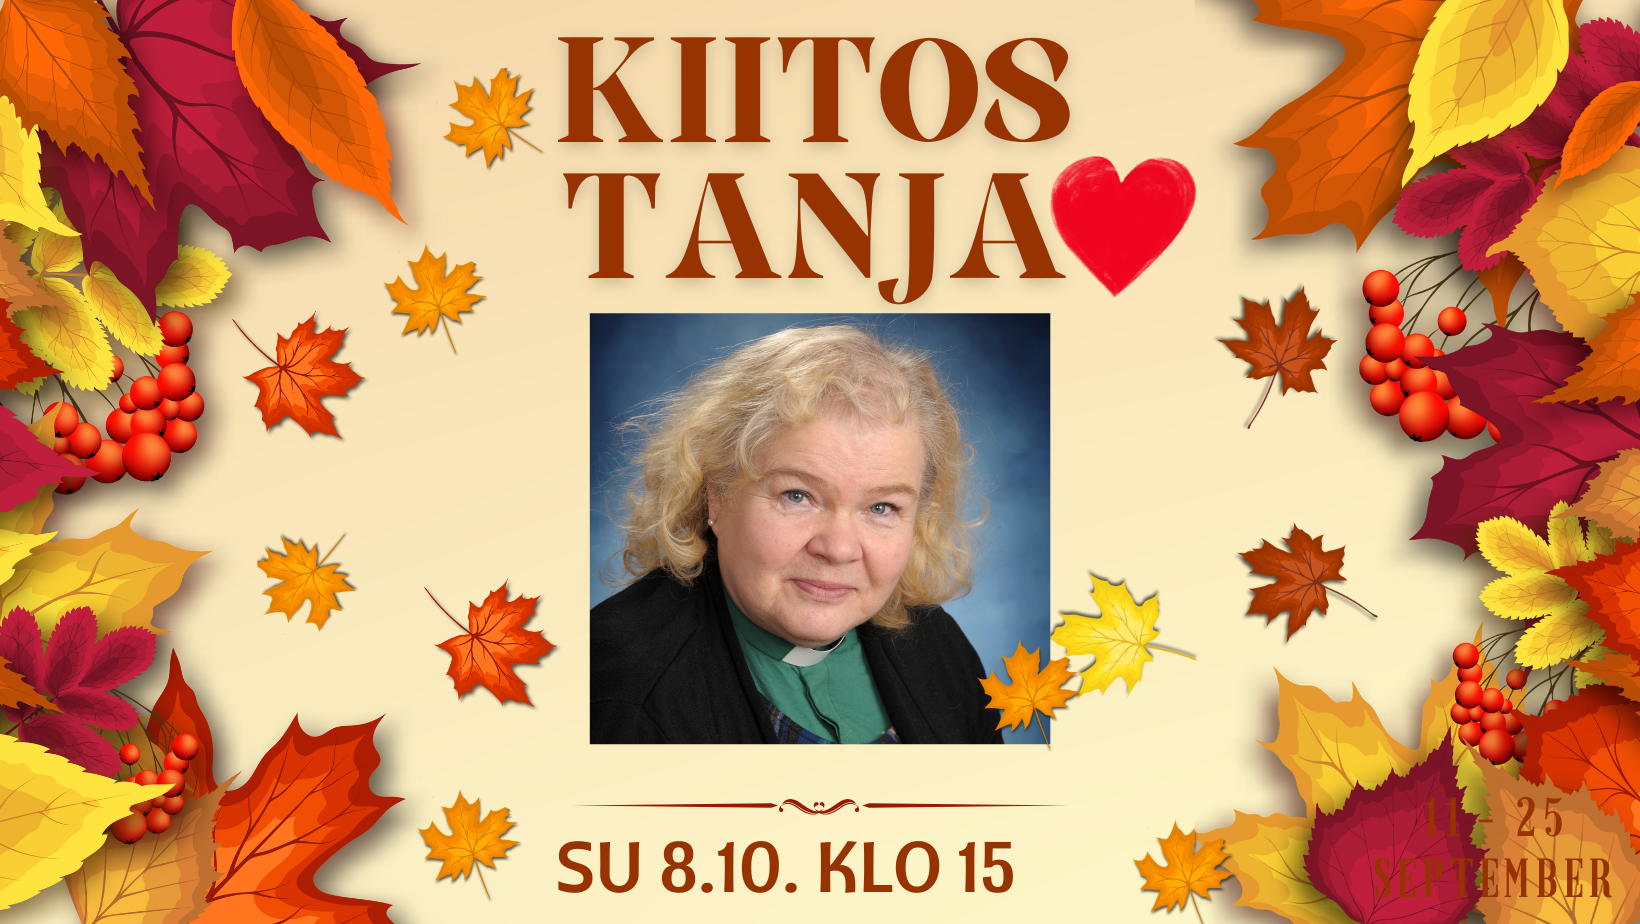 Kuvassa syksyn lehtiä, Tanja Bergin kuva ja teksti: Kiitos Tanja su 8.10. klo 15.